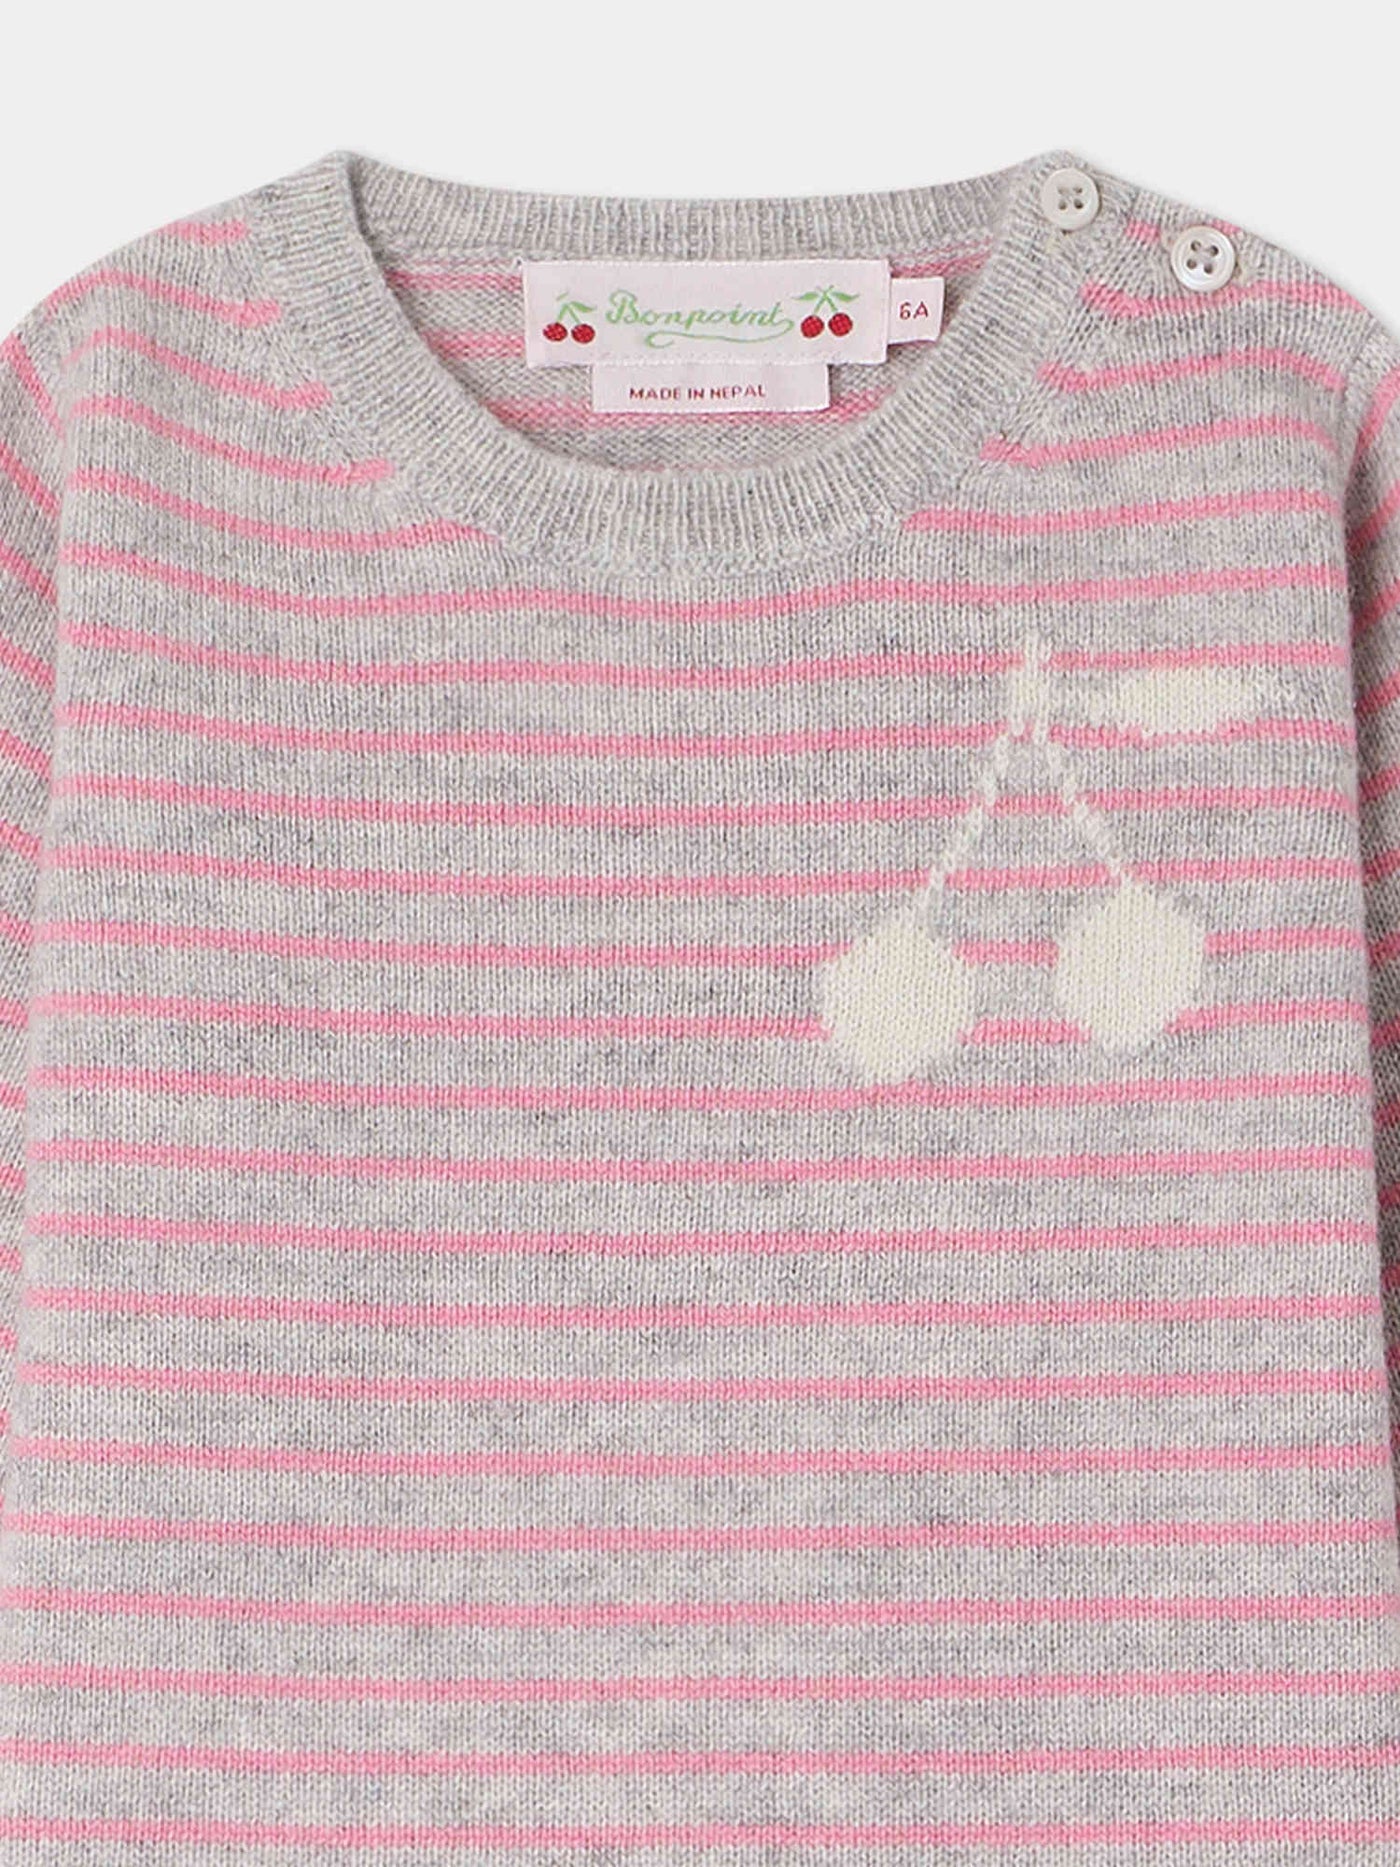 Celly Sweater dark pink